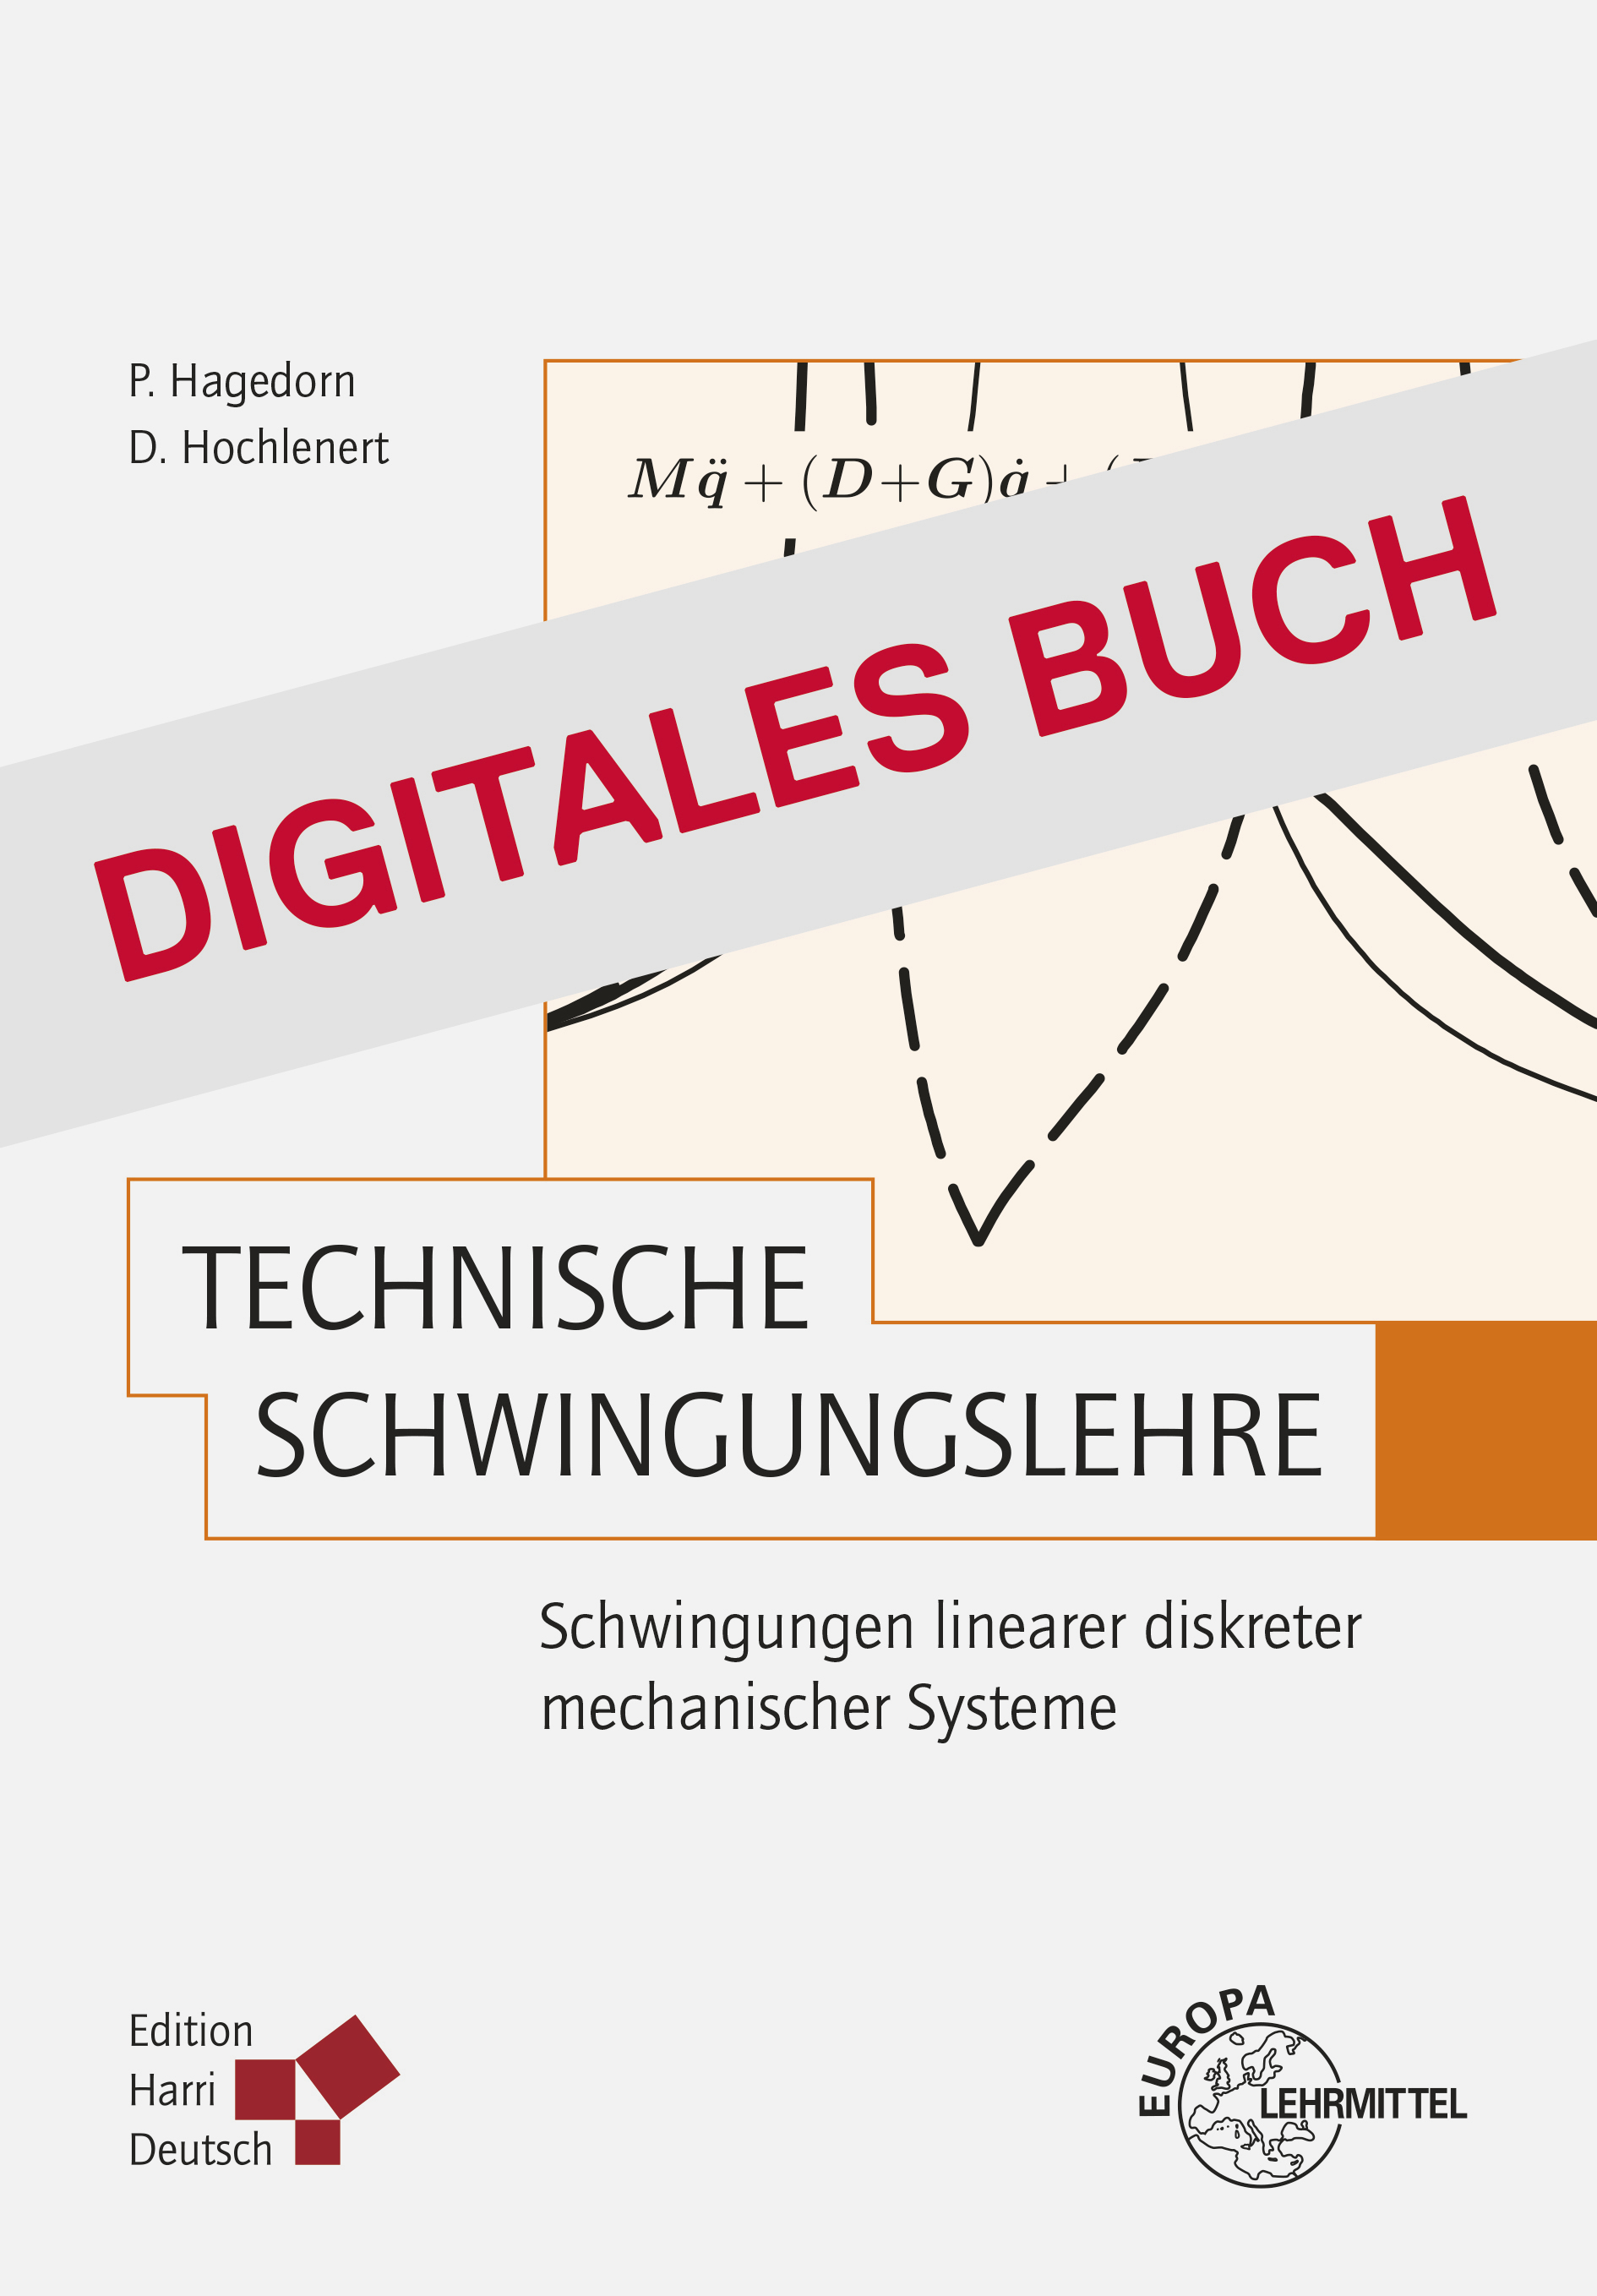 Technische Schwingungslehre - Digitales Buch